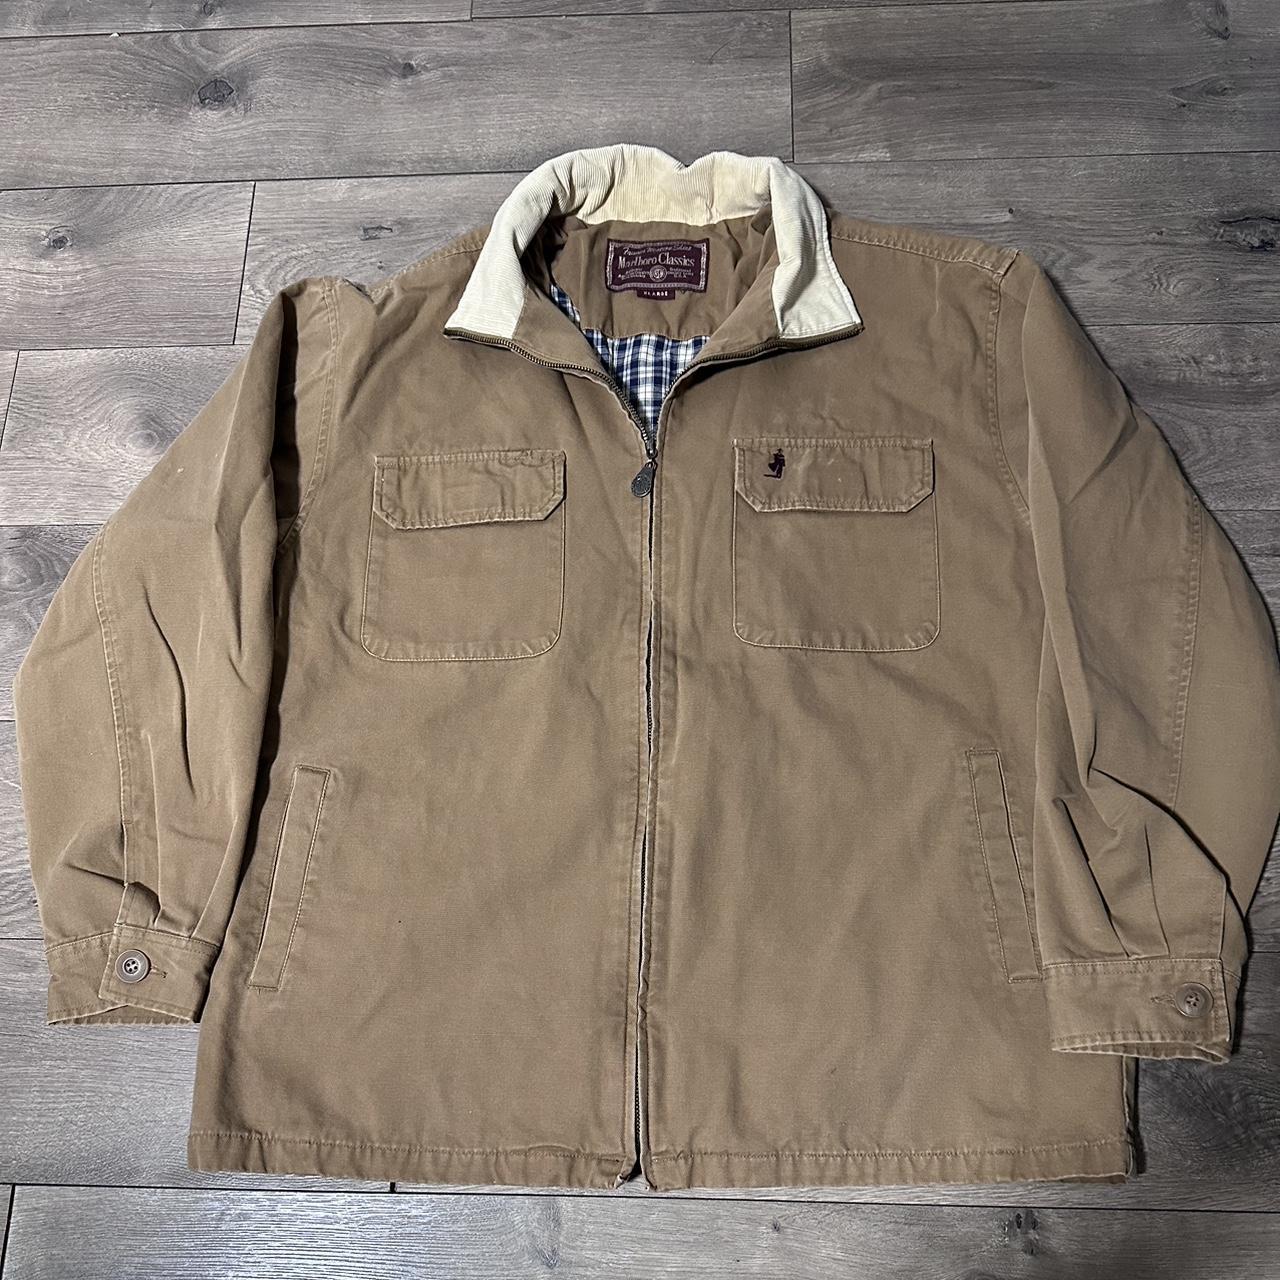 Marlboro Classics leather jacket | eBay